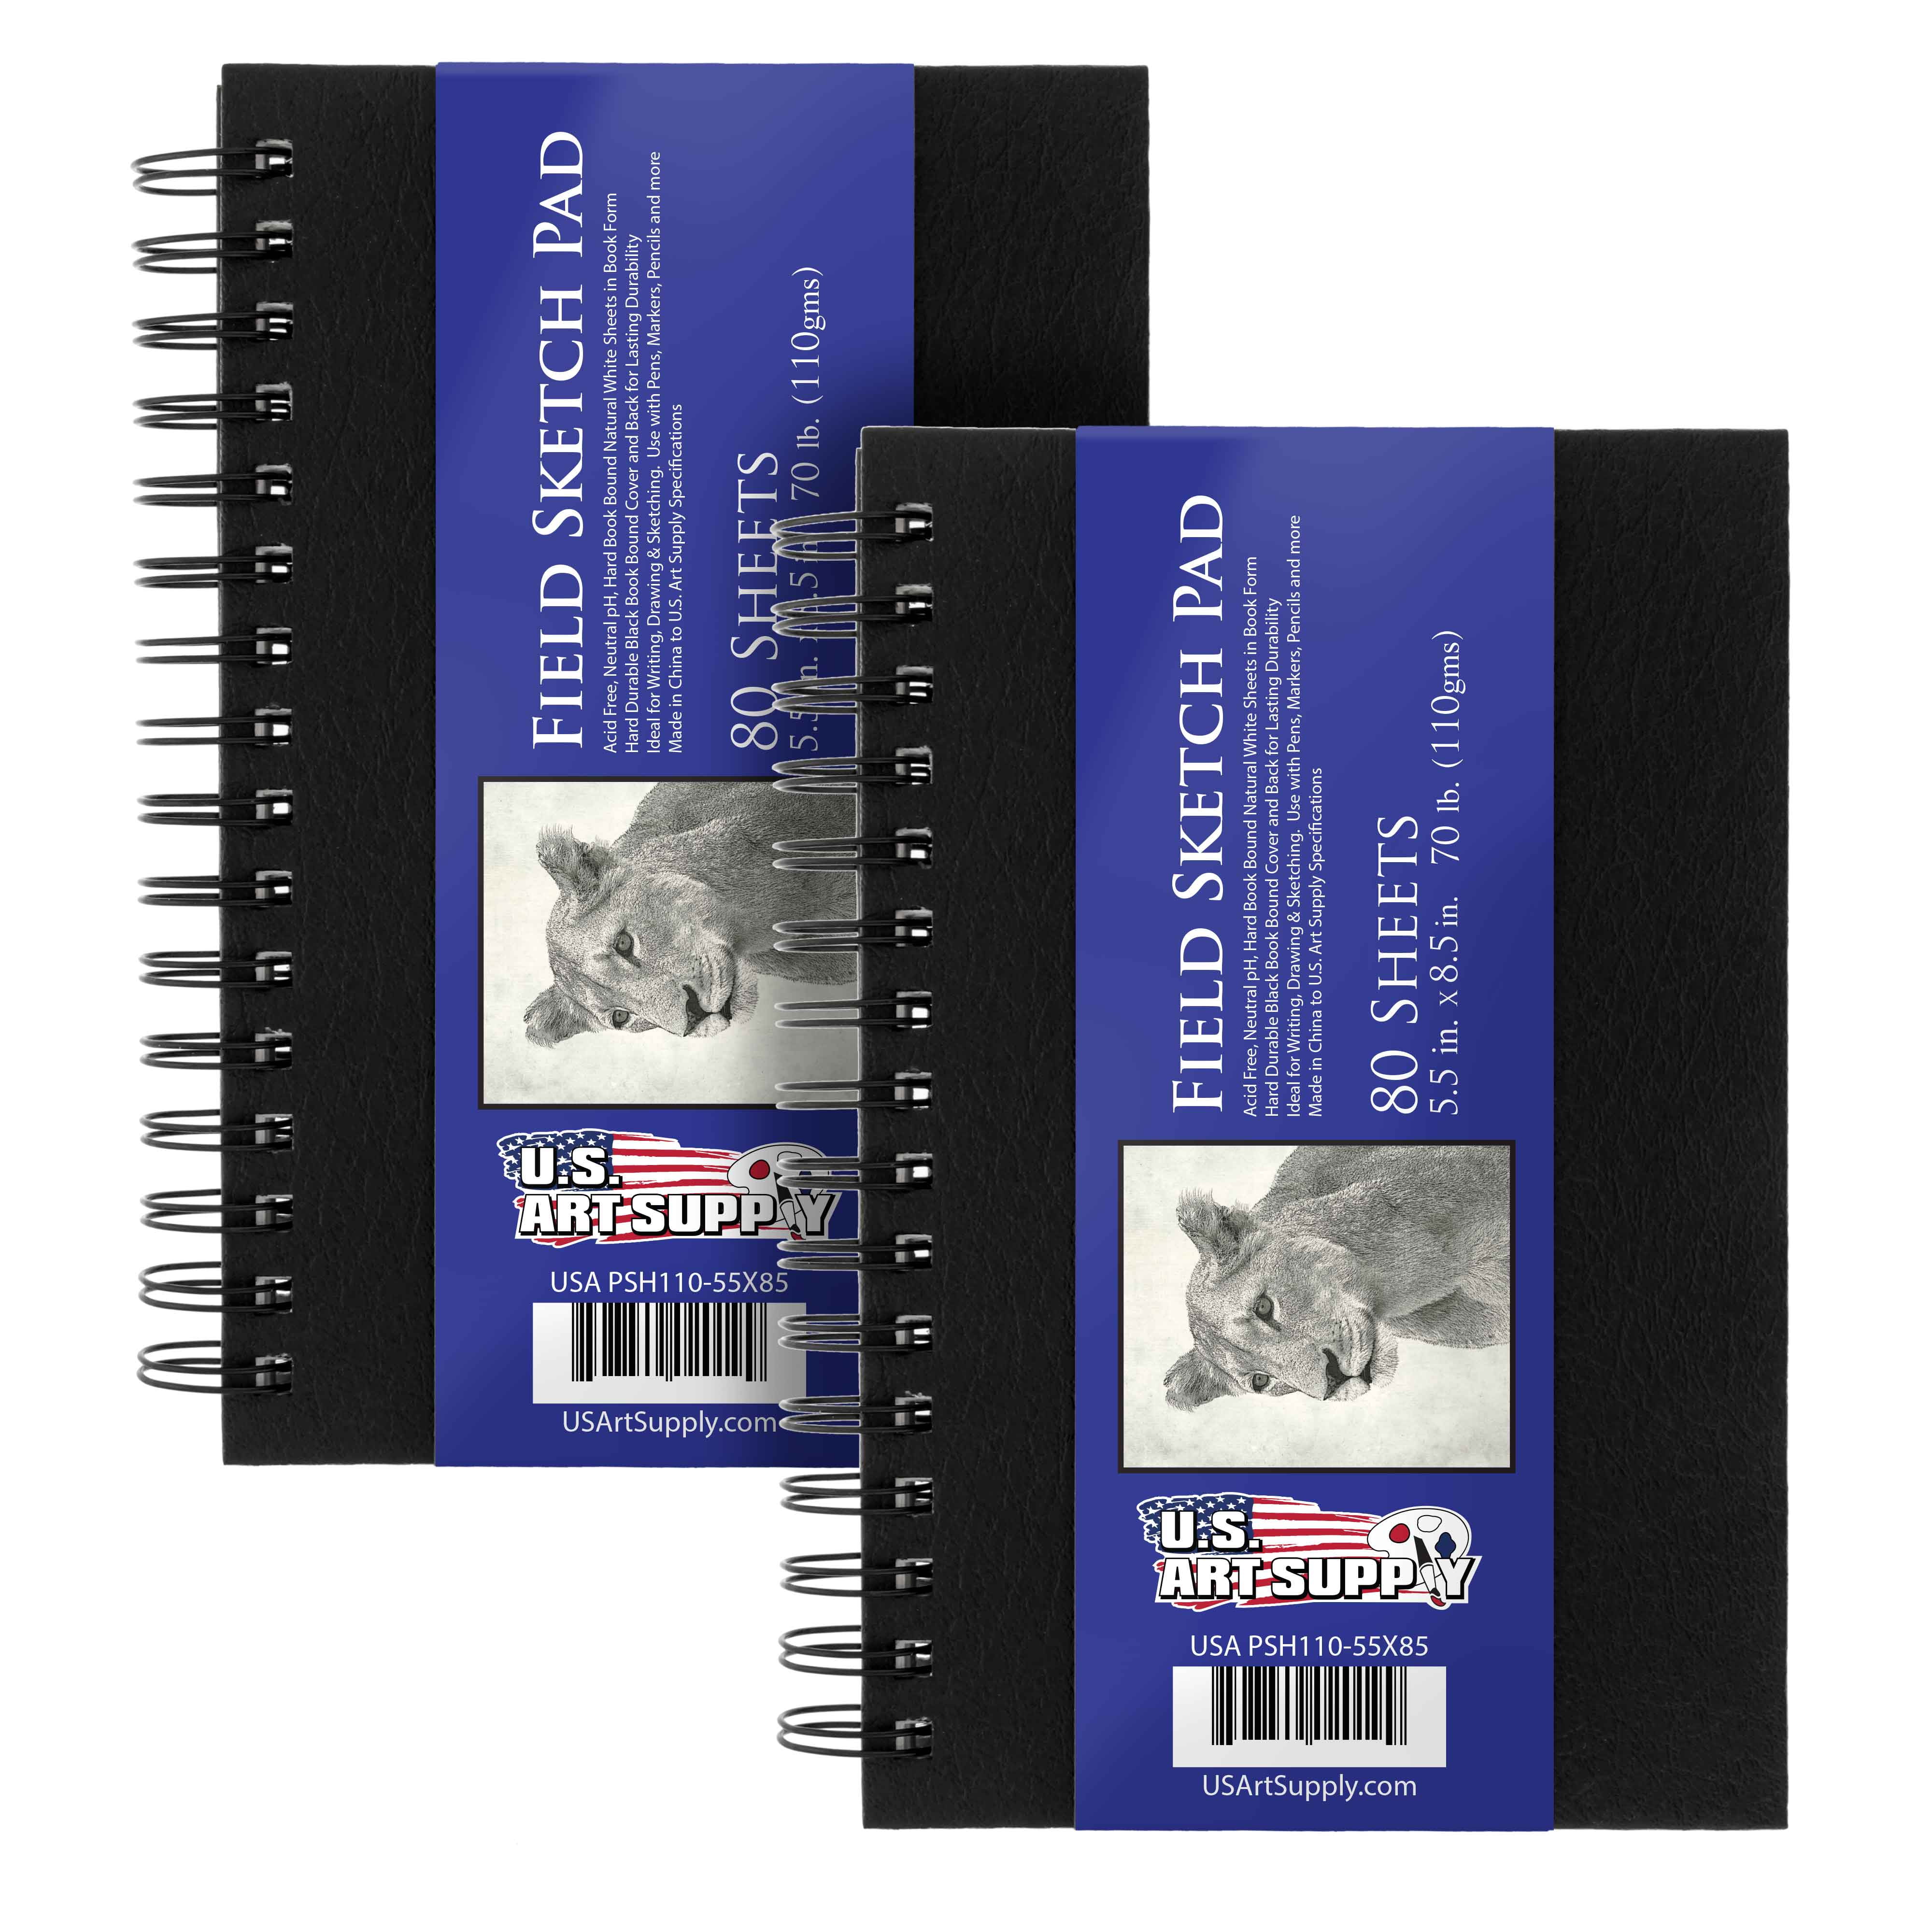 Daler-Rowney Simply Hardbound Sketchbook, Black Cover, Sketch Paper, 4 x  6, 110 Sheets 